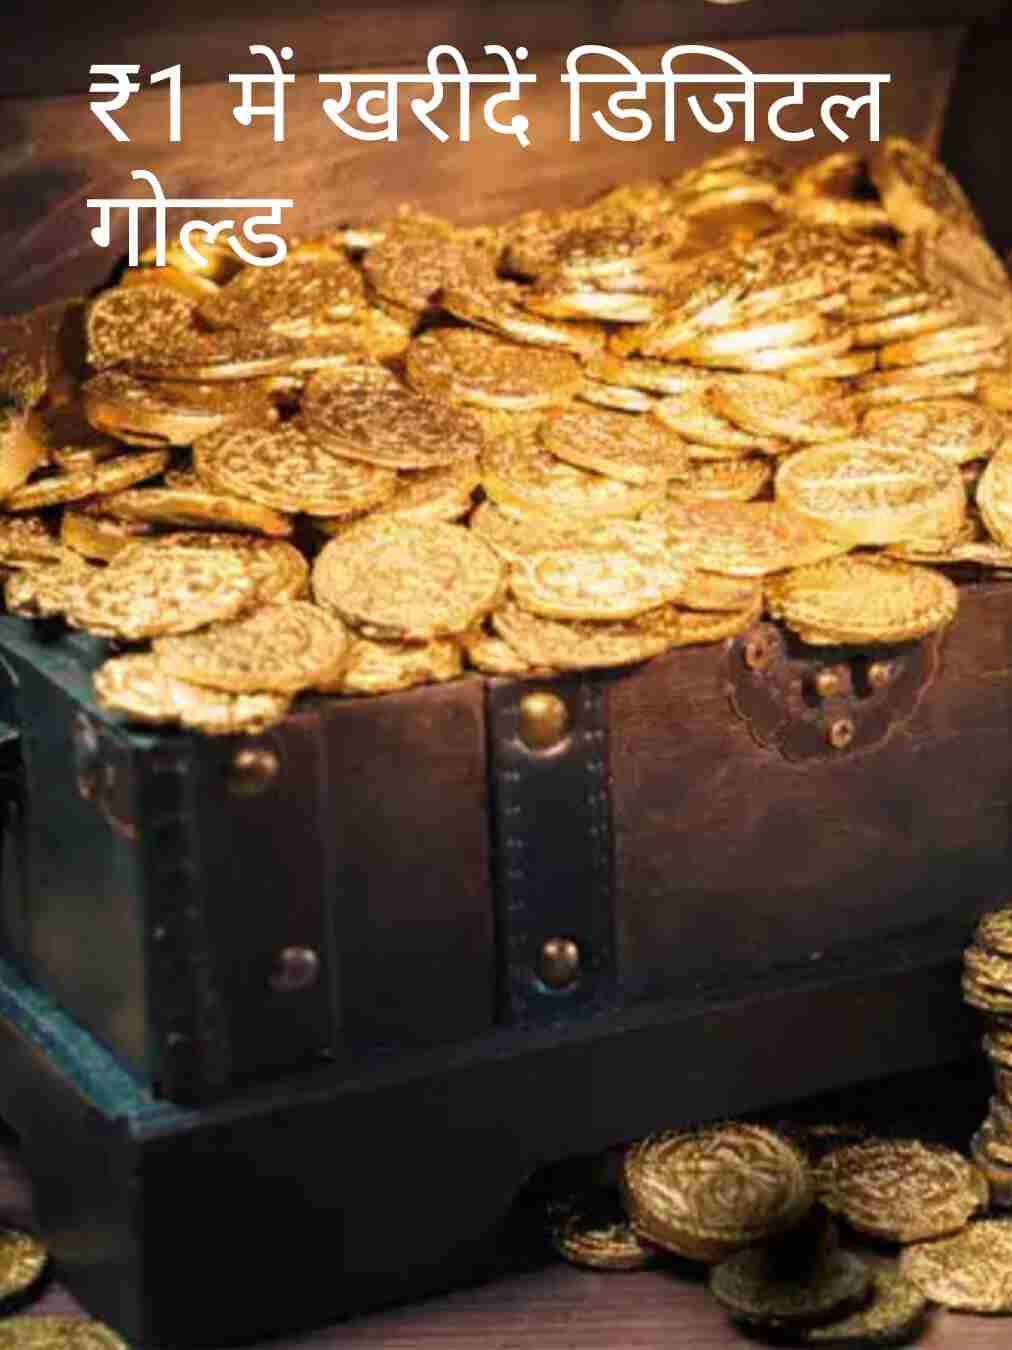 इस धनतेरस-दिवाली सोना खरीदें केवल एक रुपए में